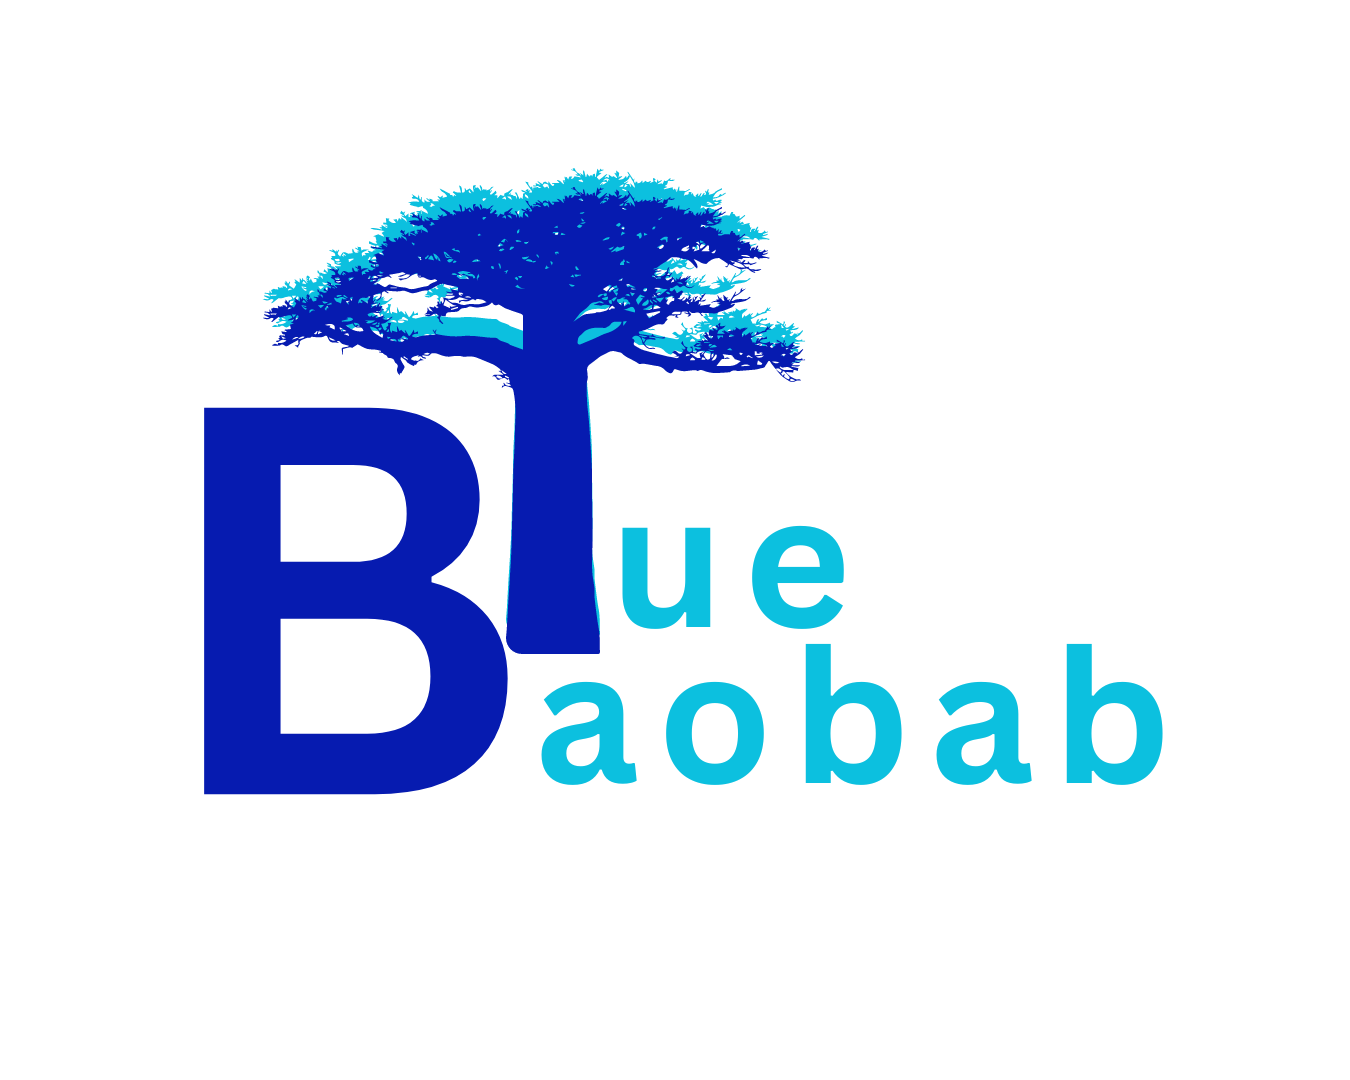 Blue Baobab.png